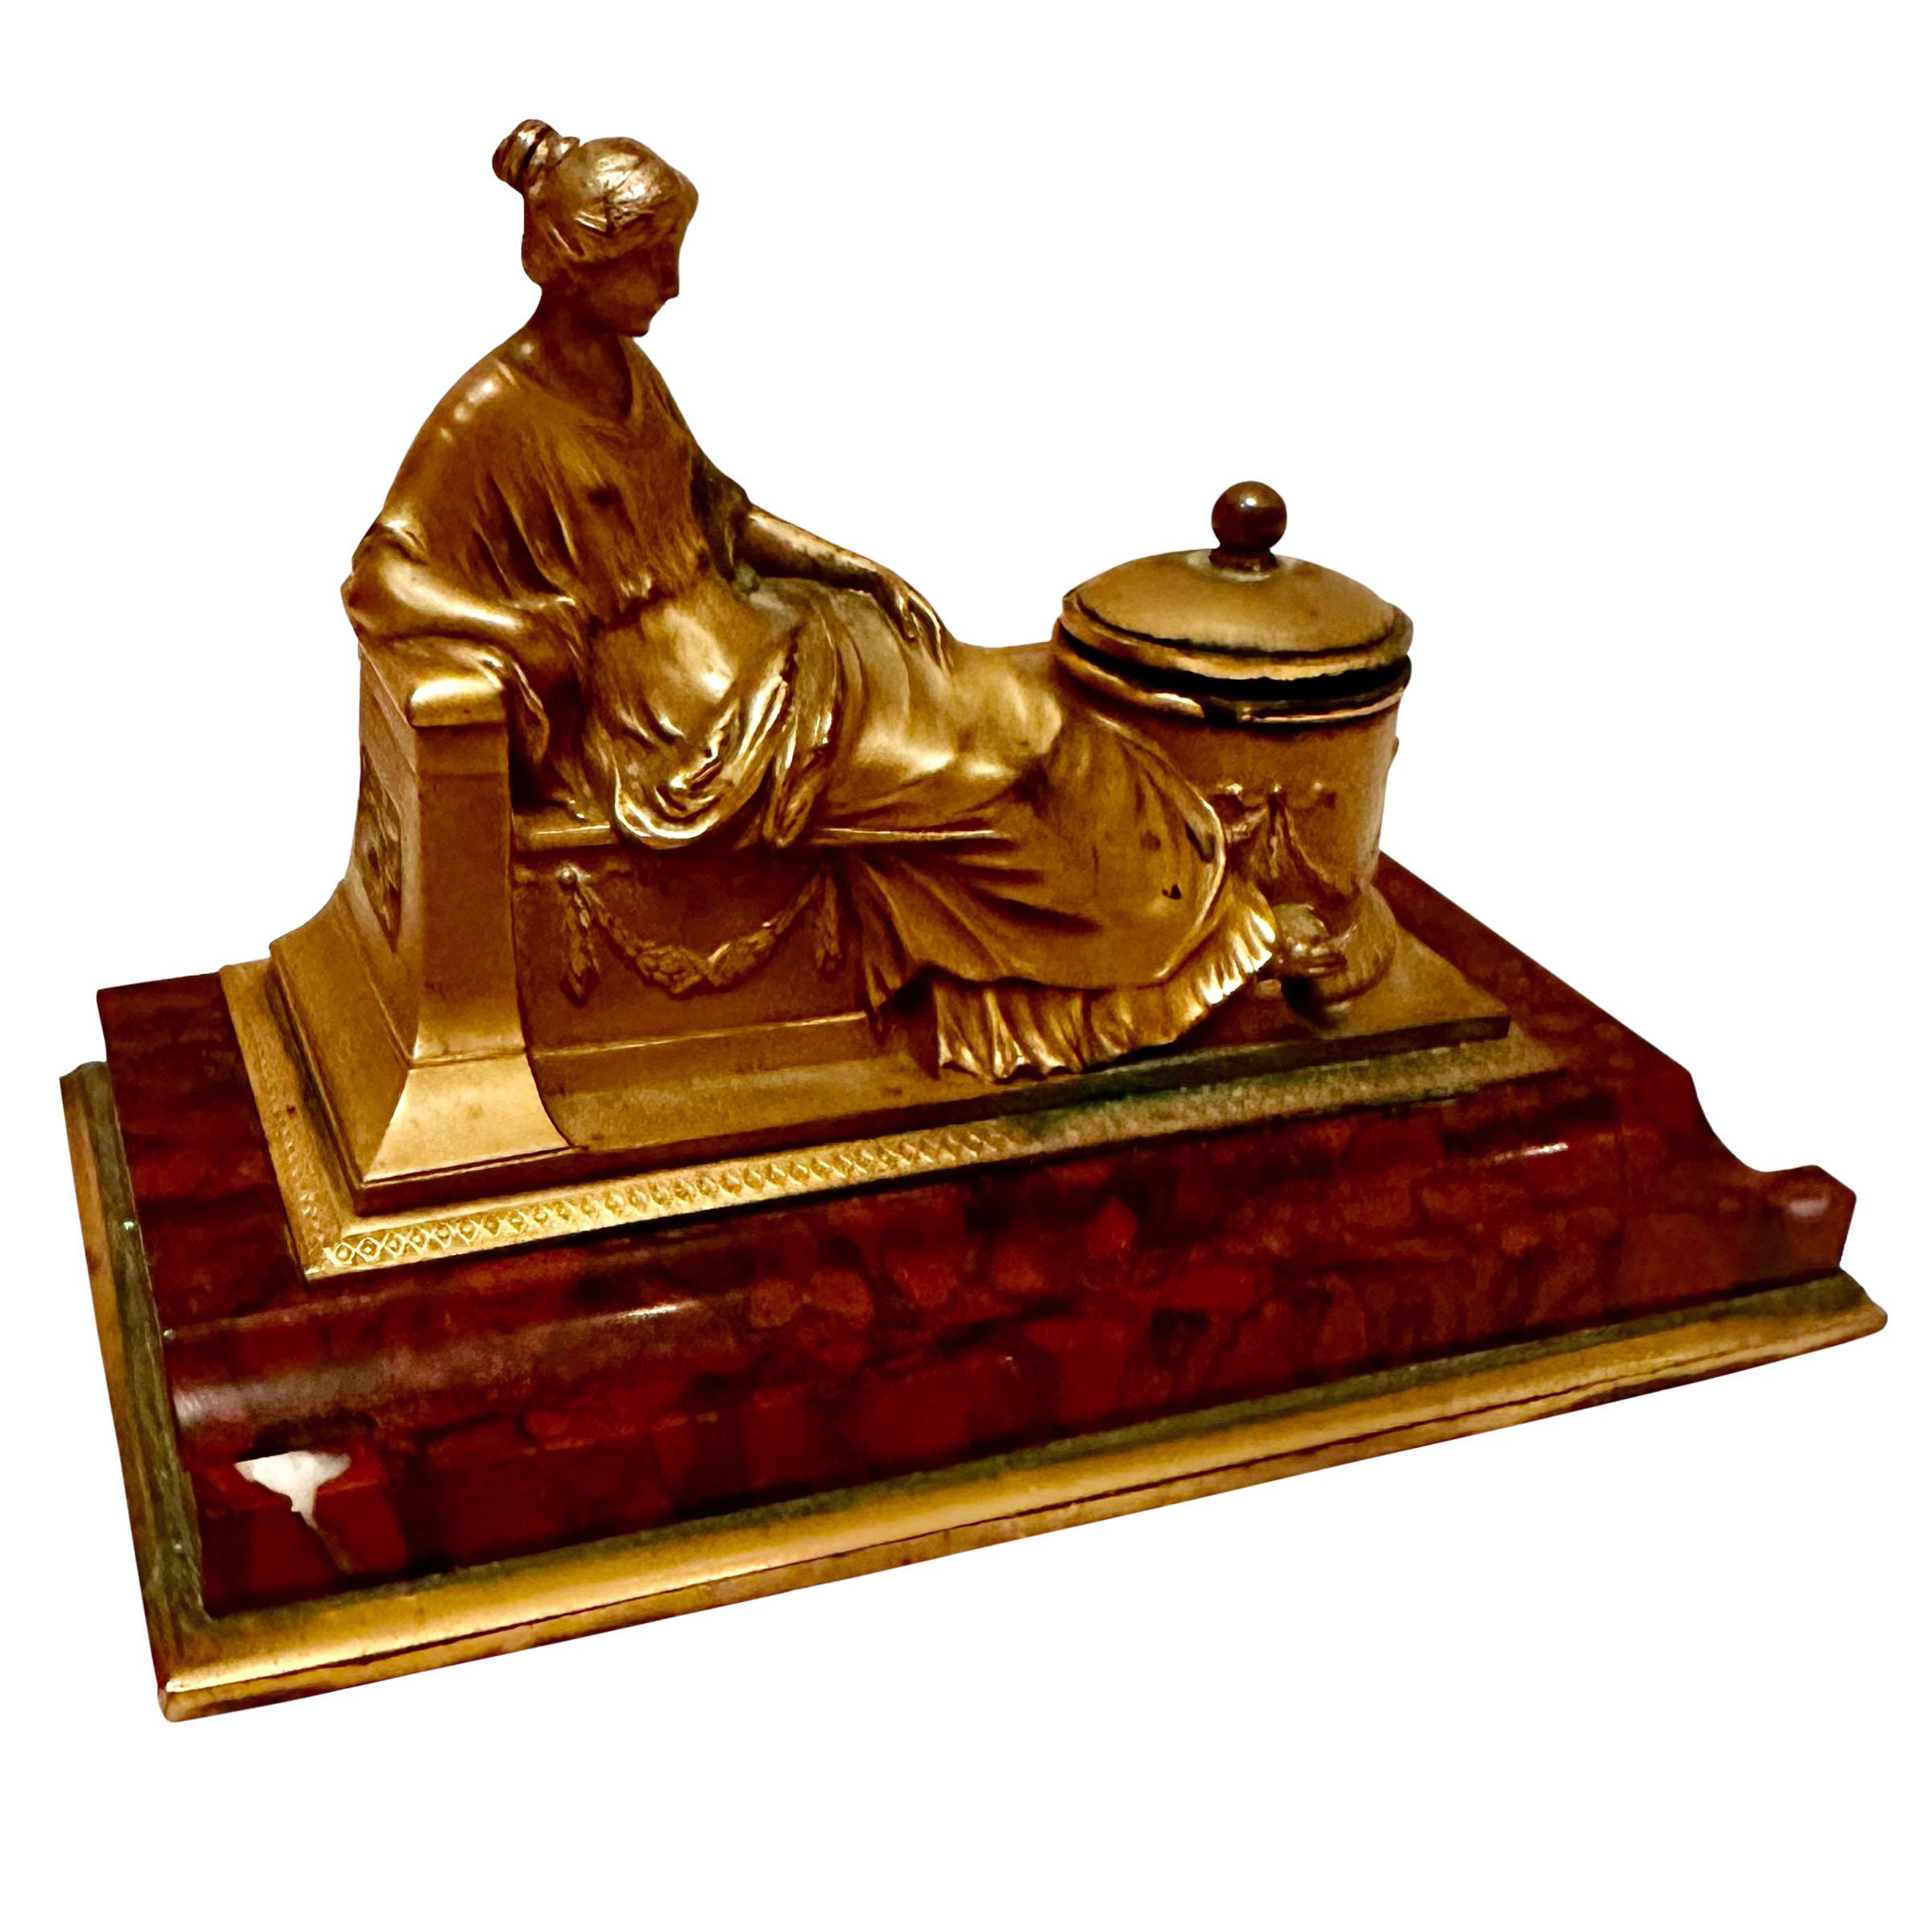 Eine wunderbare antike Bronze Tintenfass mit einer Bronze dore Statue einer Dame und drei Zoll tief Tintenspender. Das Ganze steht auf einem rougefarbenen Marmorsockel, der eine Fläche für einen Stift oder Bleistift bietet.  An der Unterseite